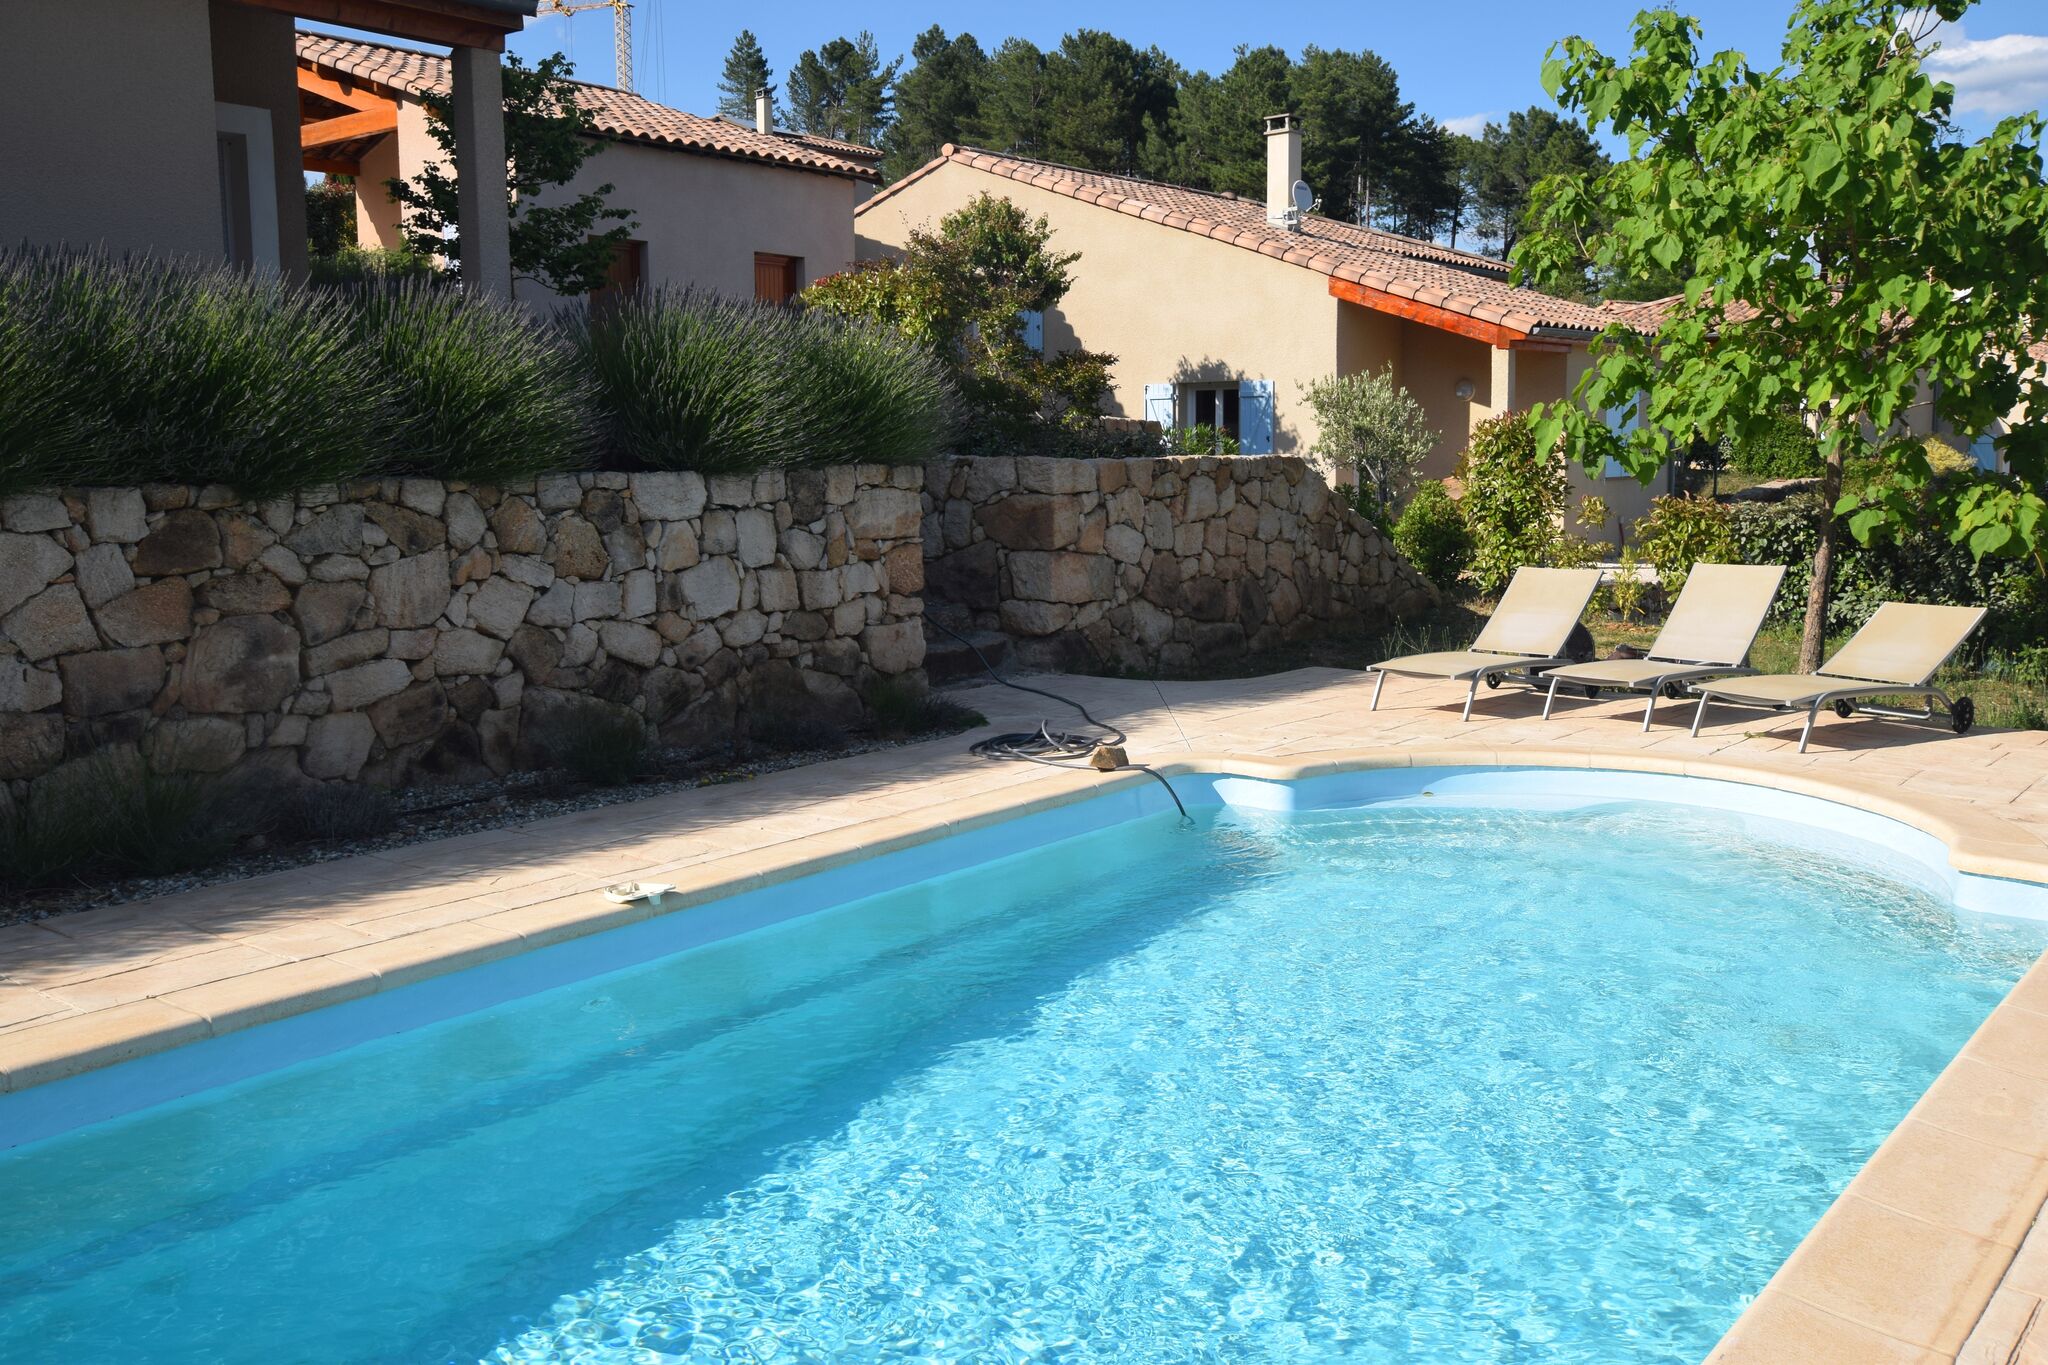 Prachtig gelegen nieuwe vakantie villa met prive zwembad, in hartje Ardèche